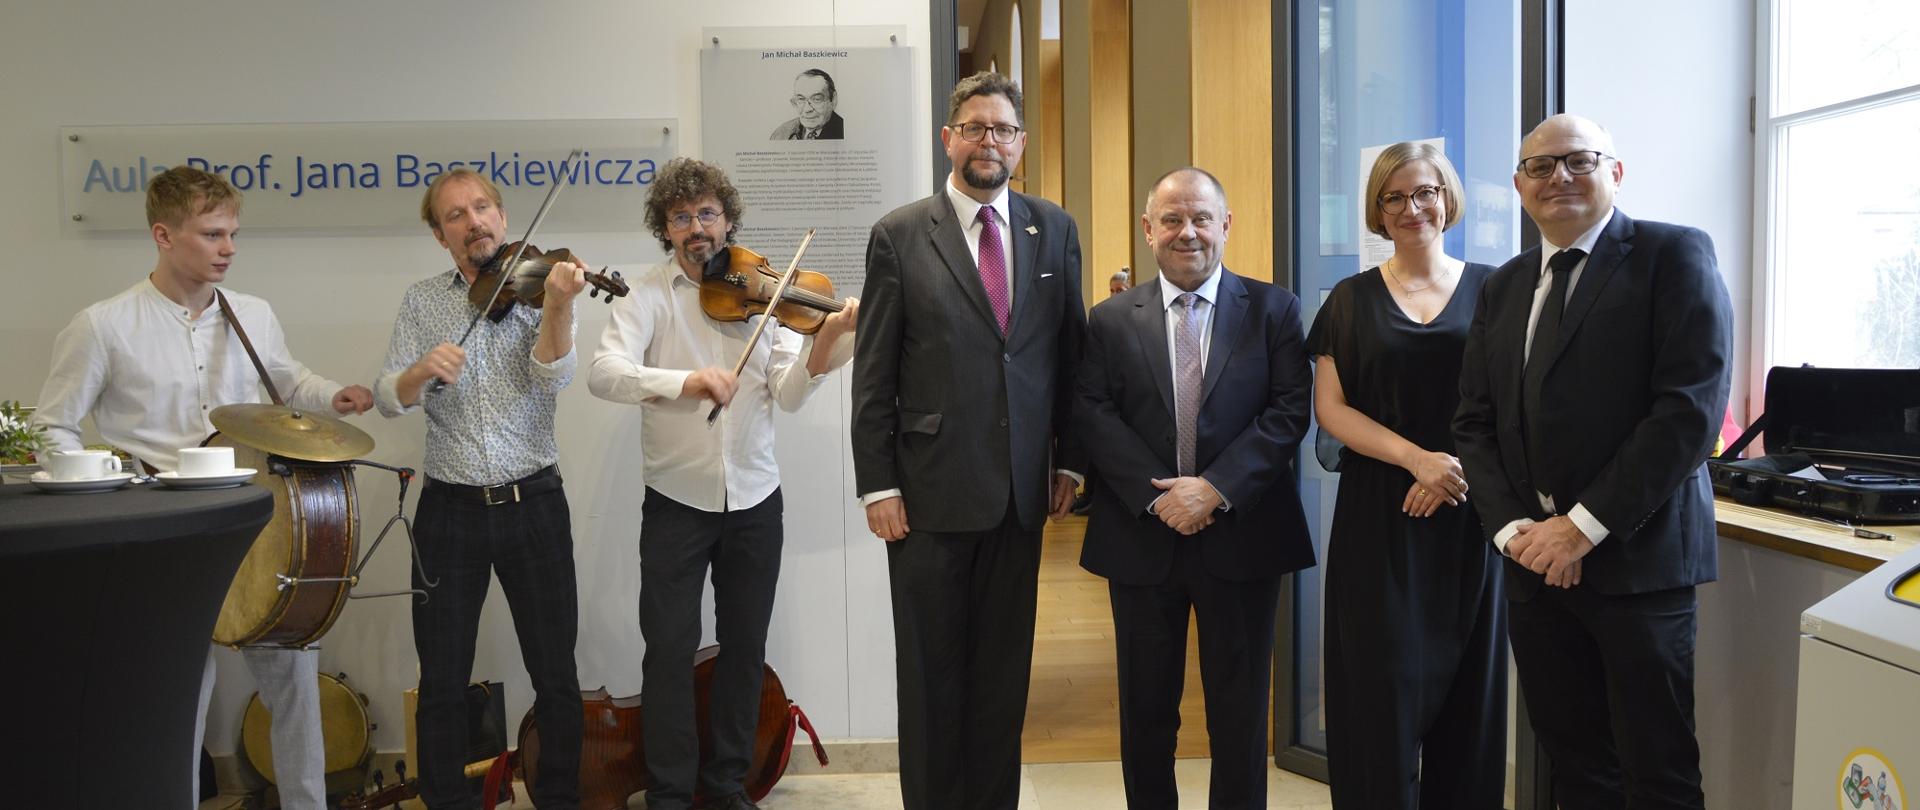 W sali stoi w rzędzie grupa czterech osób, pośrodku wiceminister Szeptycki, z boku trzech mężczyzn w białych koszulach gra na instrumentach.